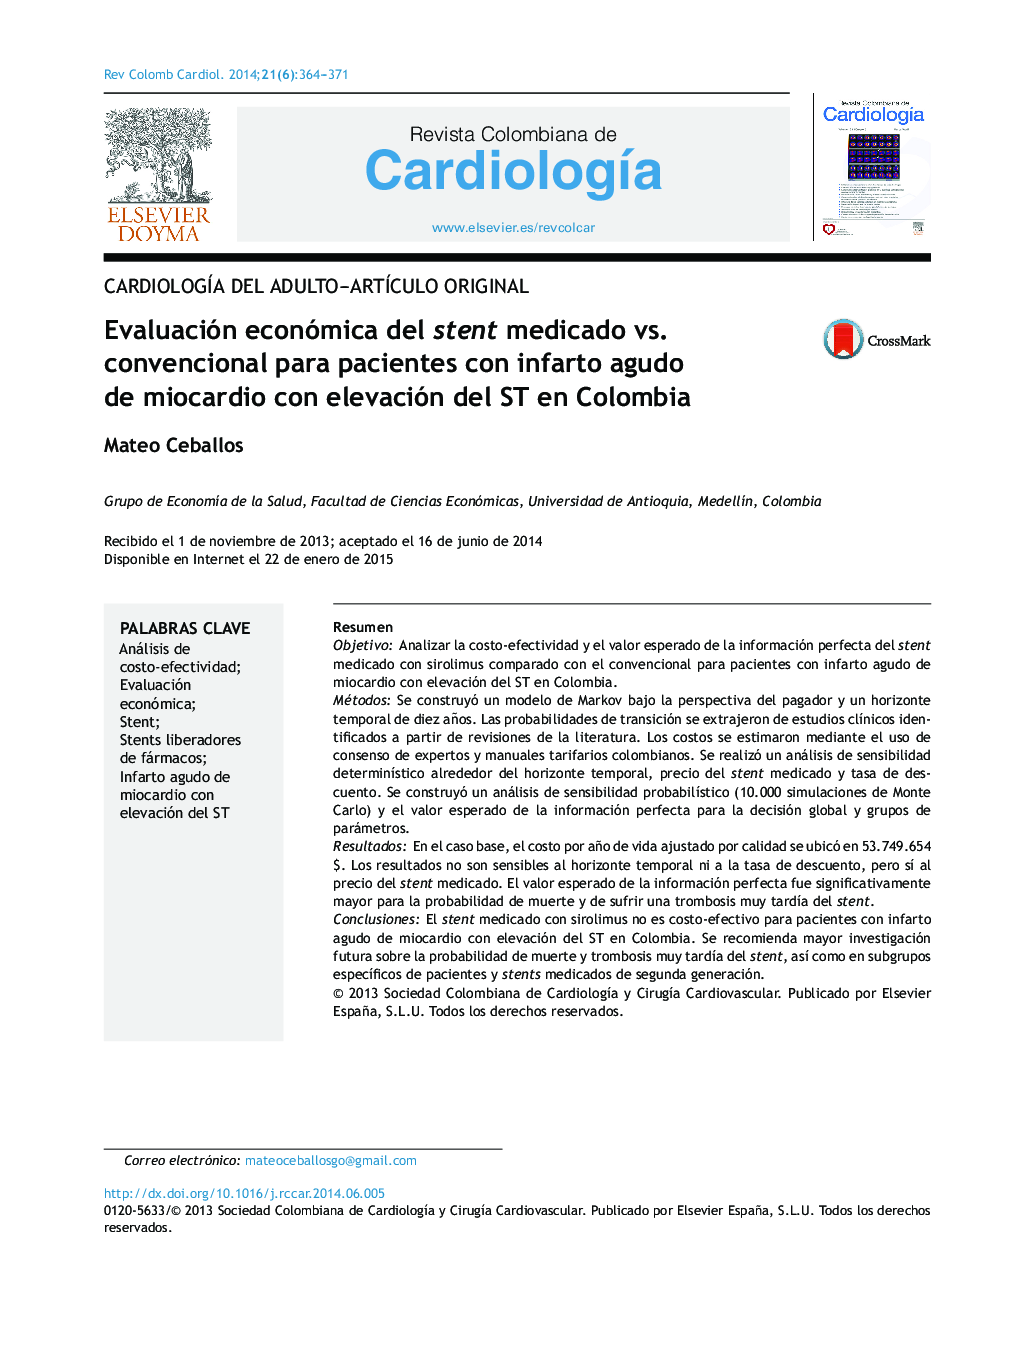 Evaluación económica del stent medicado vs. convencional para pacientes con infarto agudo de miocardio con elevación del ST en Colombia